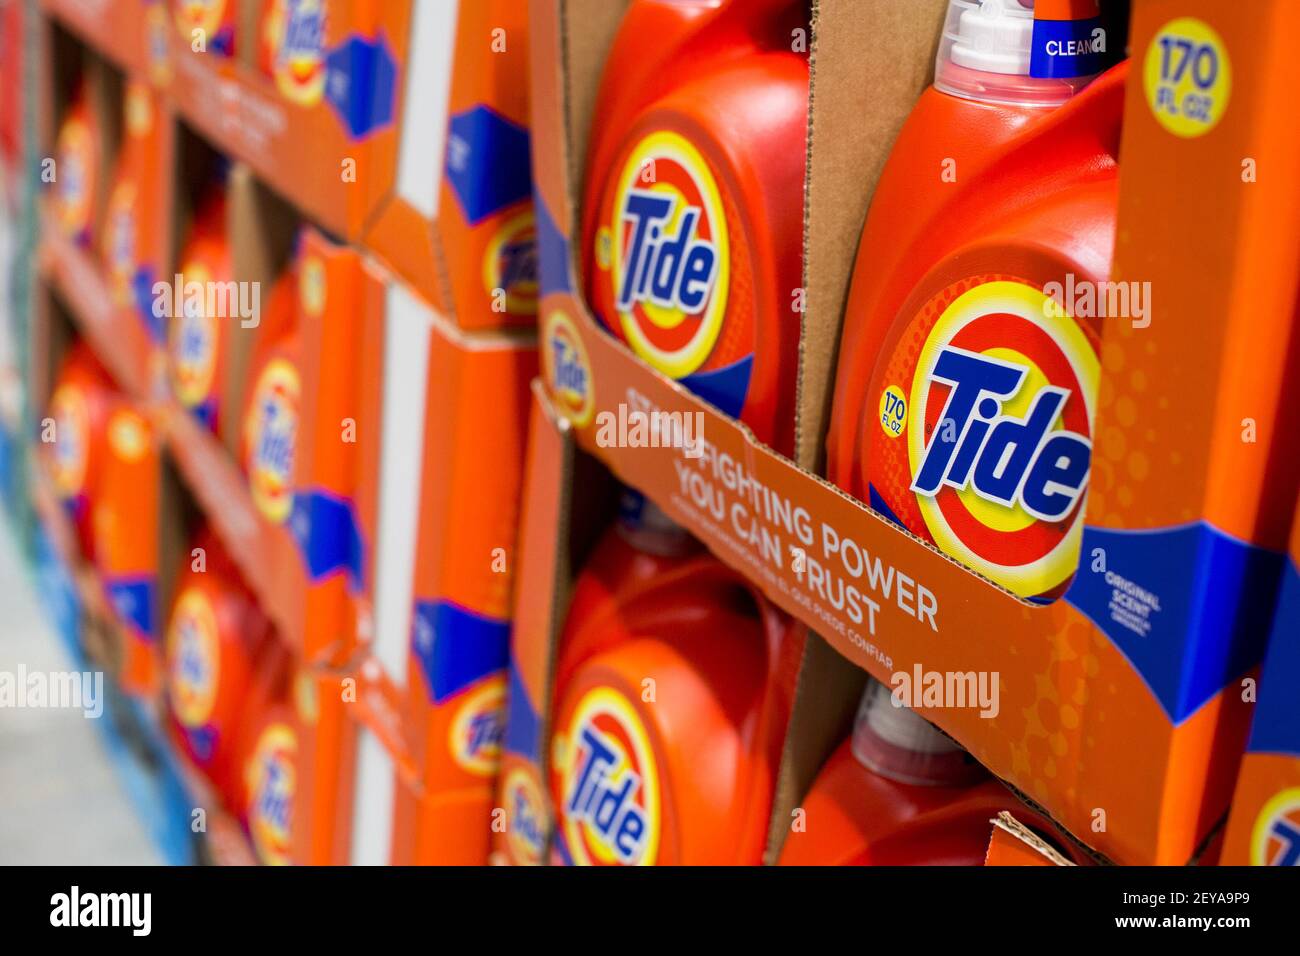 28 de febrero de 2013 - Washington, . - detergente para ropa de Tide  mostrado para la venta en un almacén de Costco Wholesale Club en  Washington, DC. Costco cuenta actualmente con